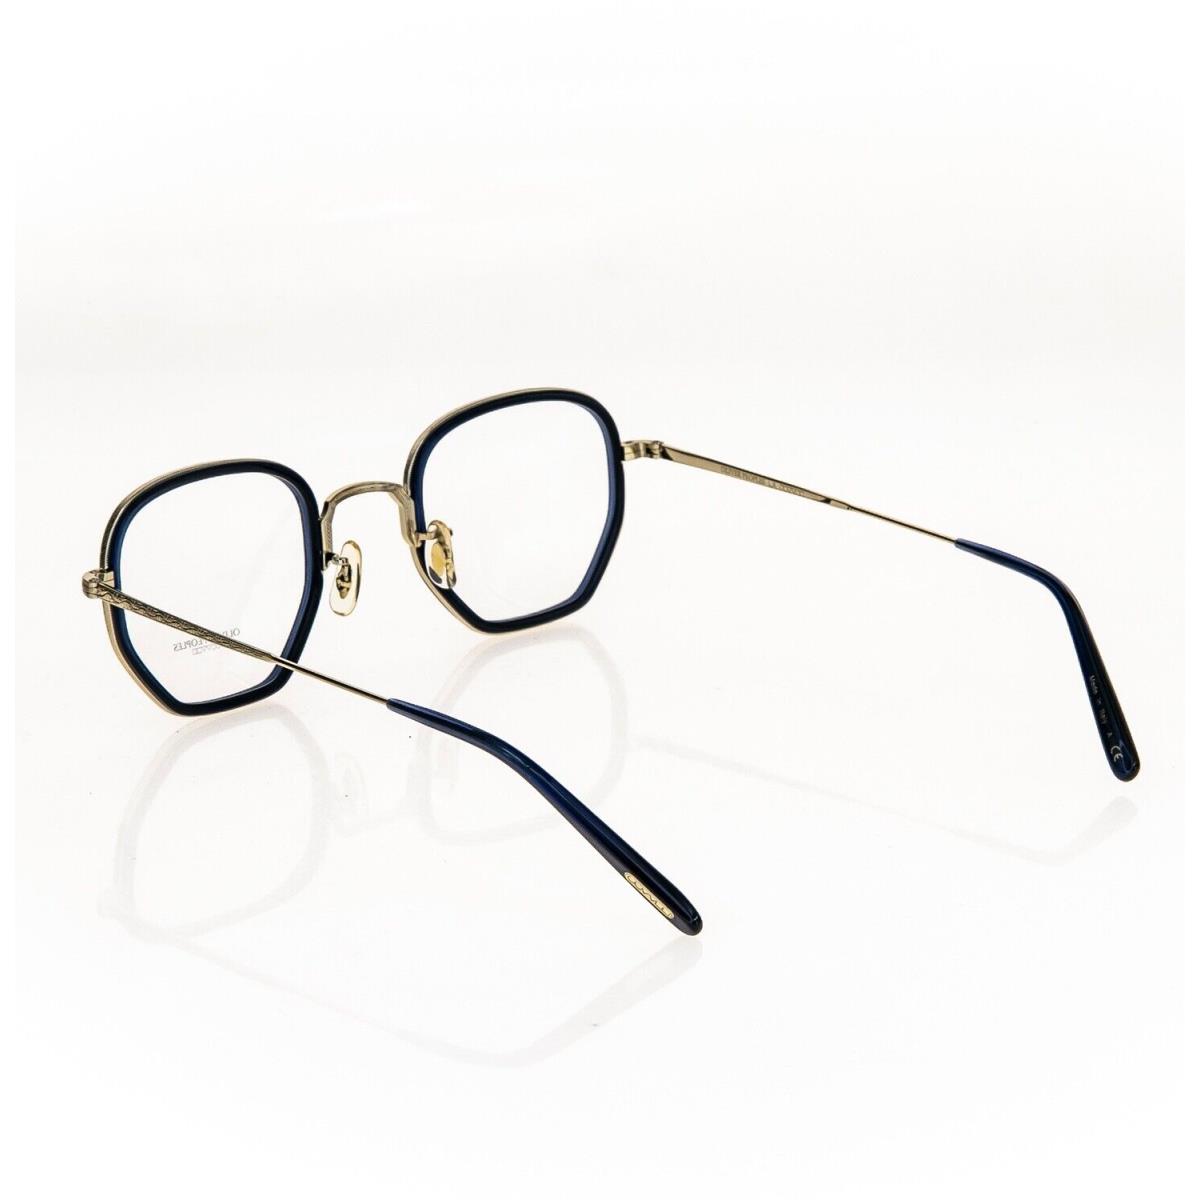 Oliver Peoples OP-40 30TH OV1234 Denim Blue Gold Eyeglasses Optical Frame  1234 | 056837788222 - Oliver Peoples eyeglasses - Blue Frame | Fash Direct